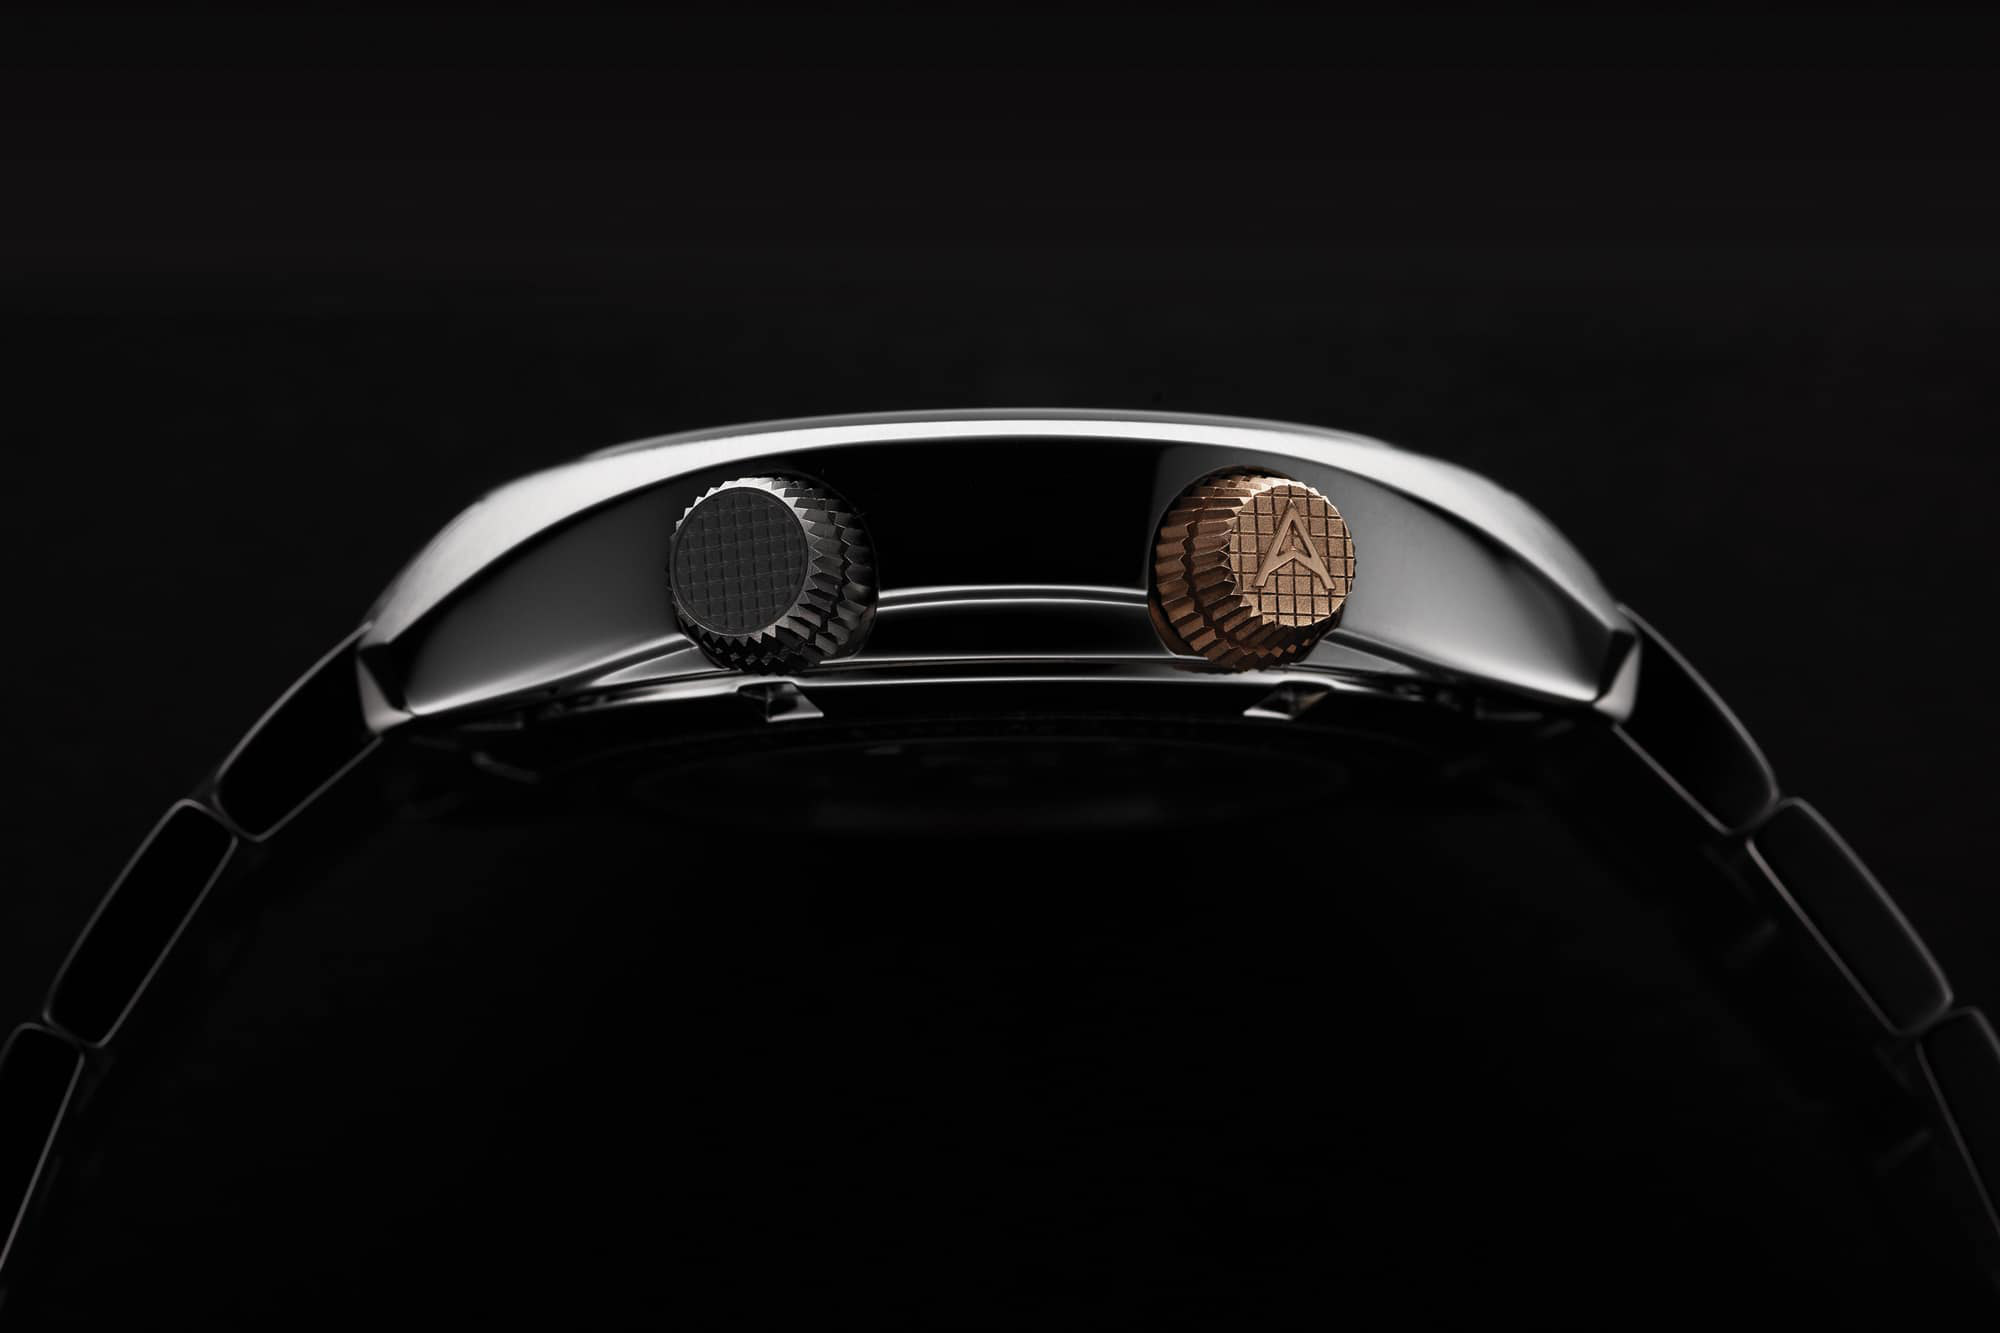 Farer's Endeavour Titanium Aqua Compressor automatic watch, crown side view